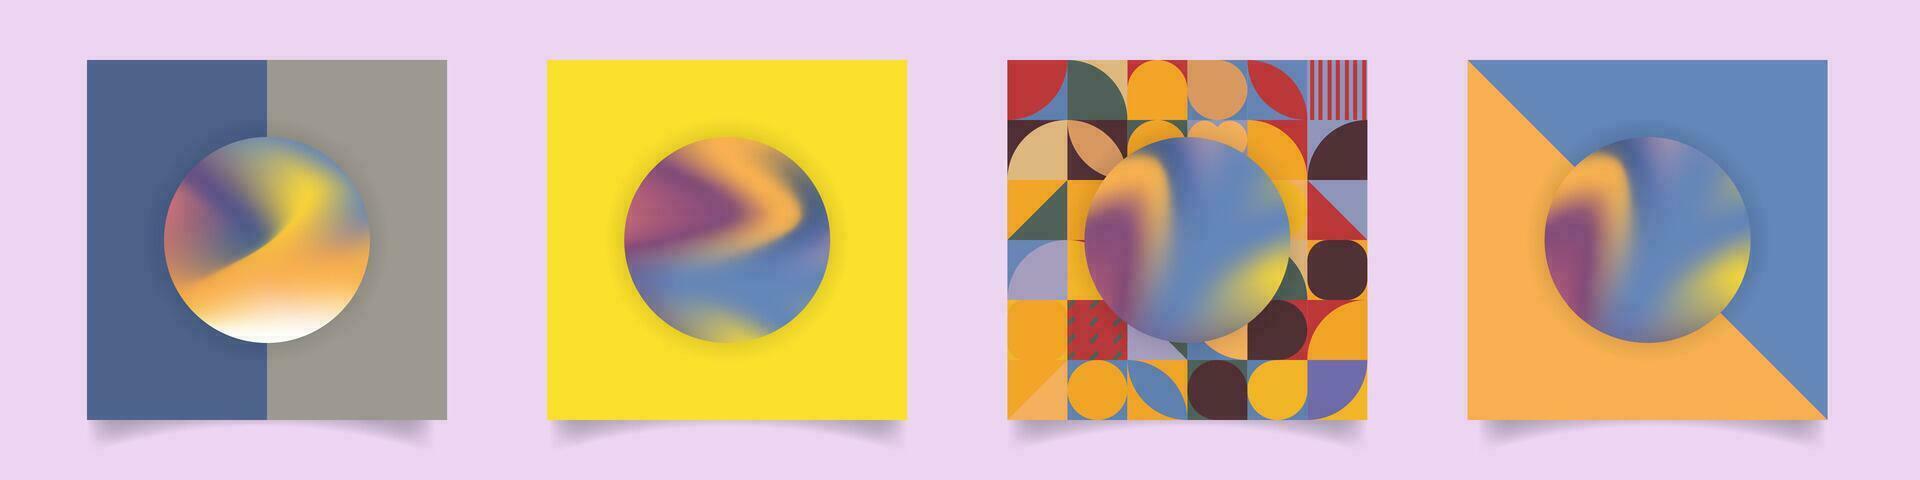 impostato di incisivo geometrico stile liquido pendenza astratto opere d'arte. colorato layout nel Banana giallo, rosato rosso, pallido arancia, e blu. vettore illustrazione. per disegni, copertine, manifesti, carte.